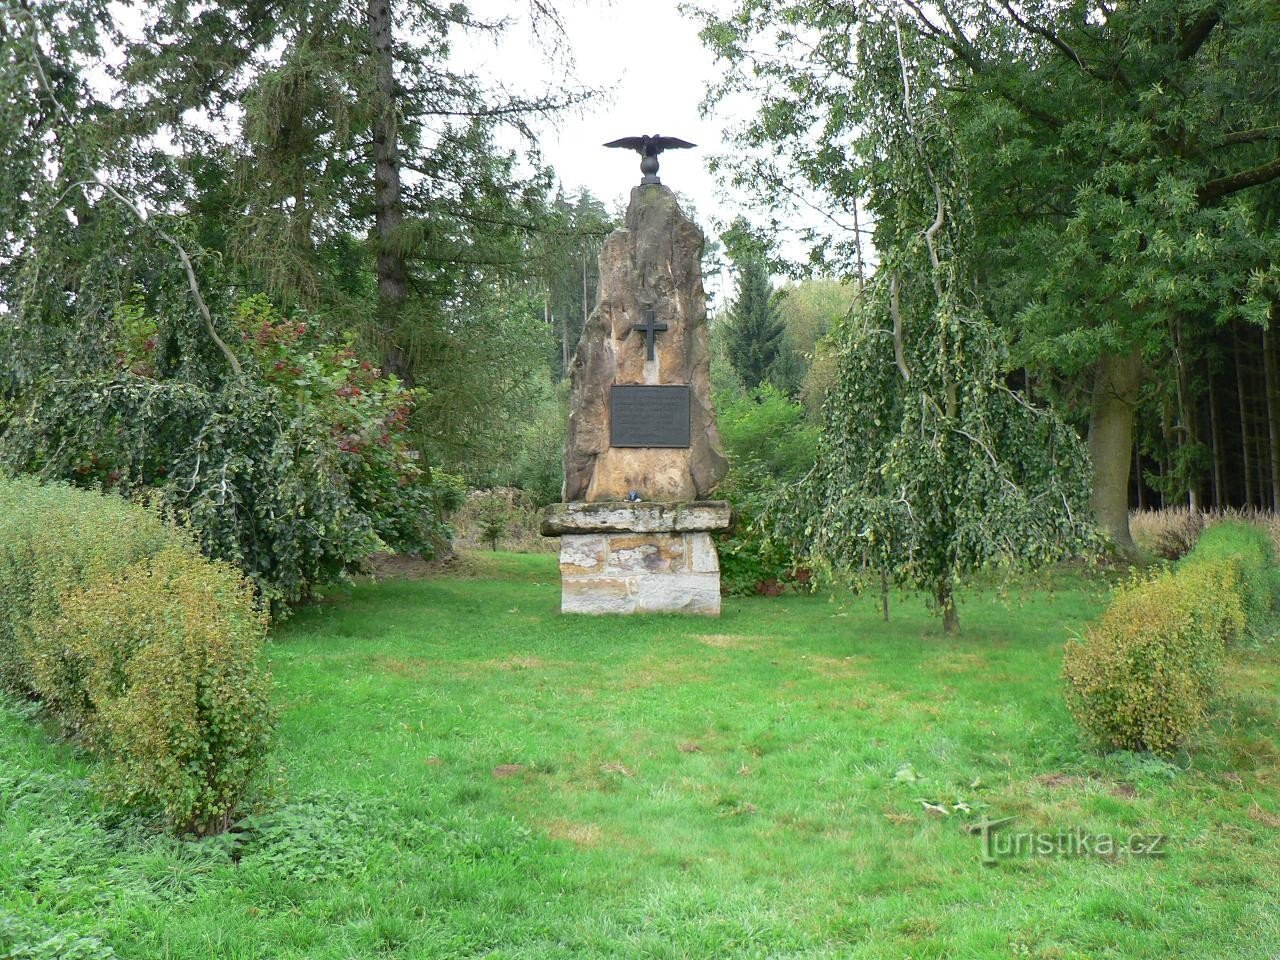 The Napoleonic monument near Jevíček